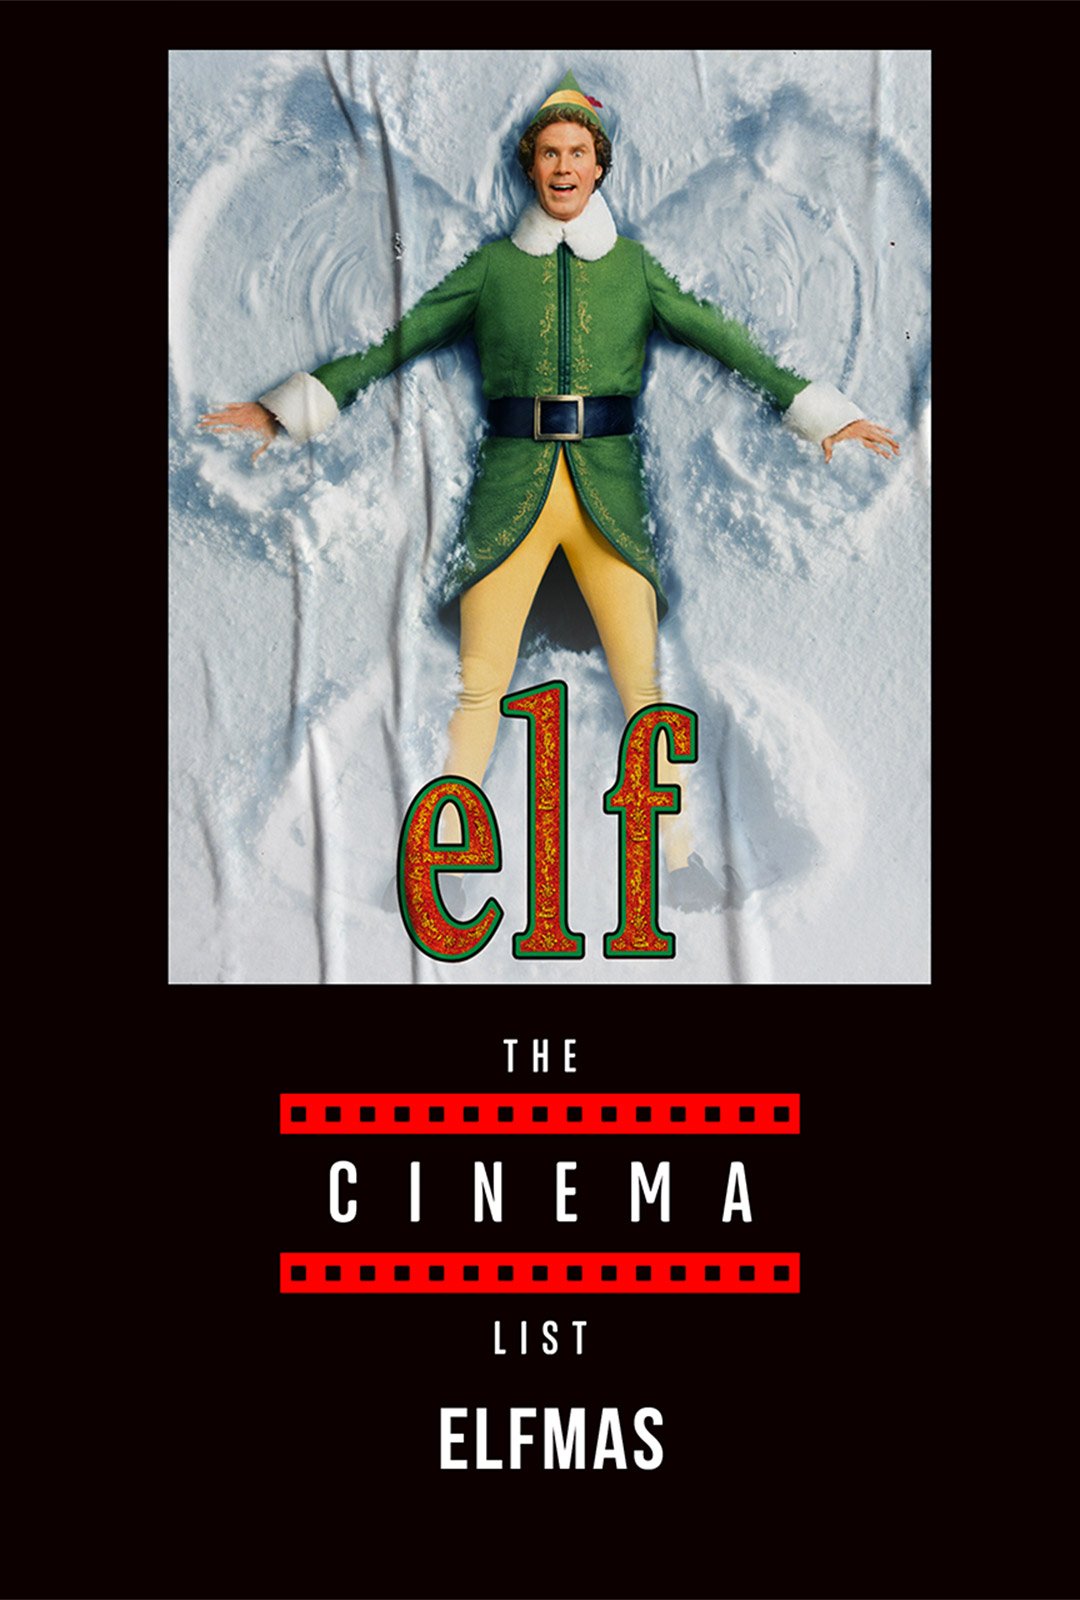 The Cinema List: Elfmas